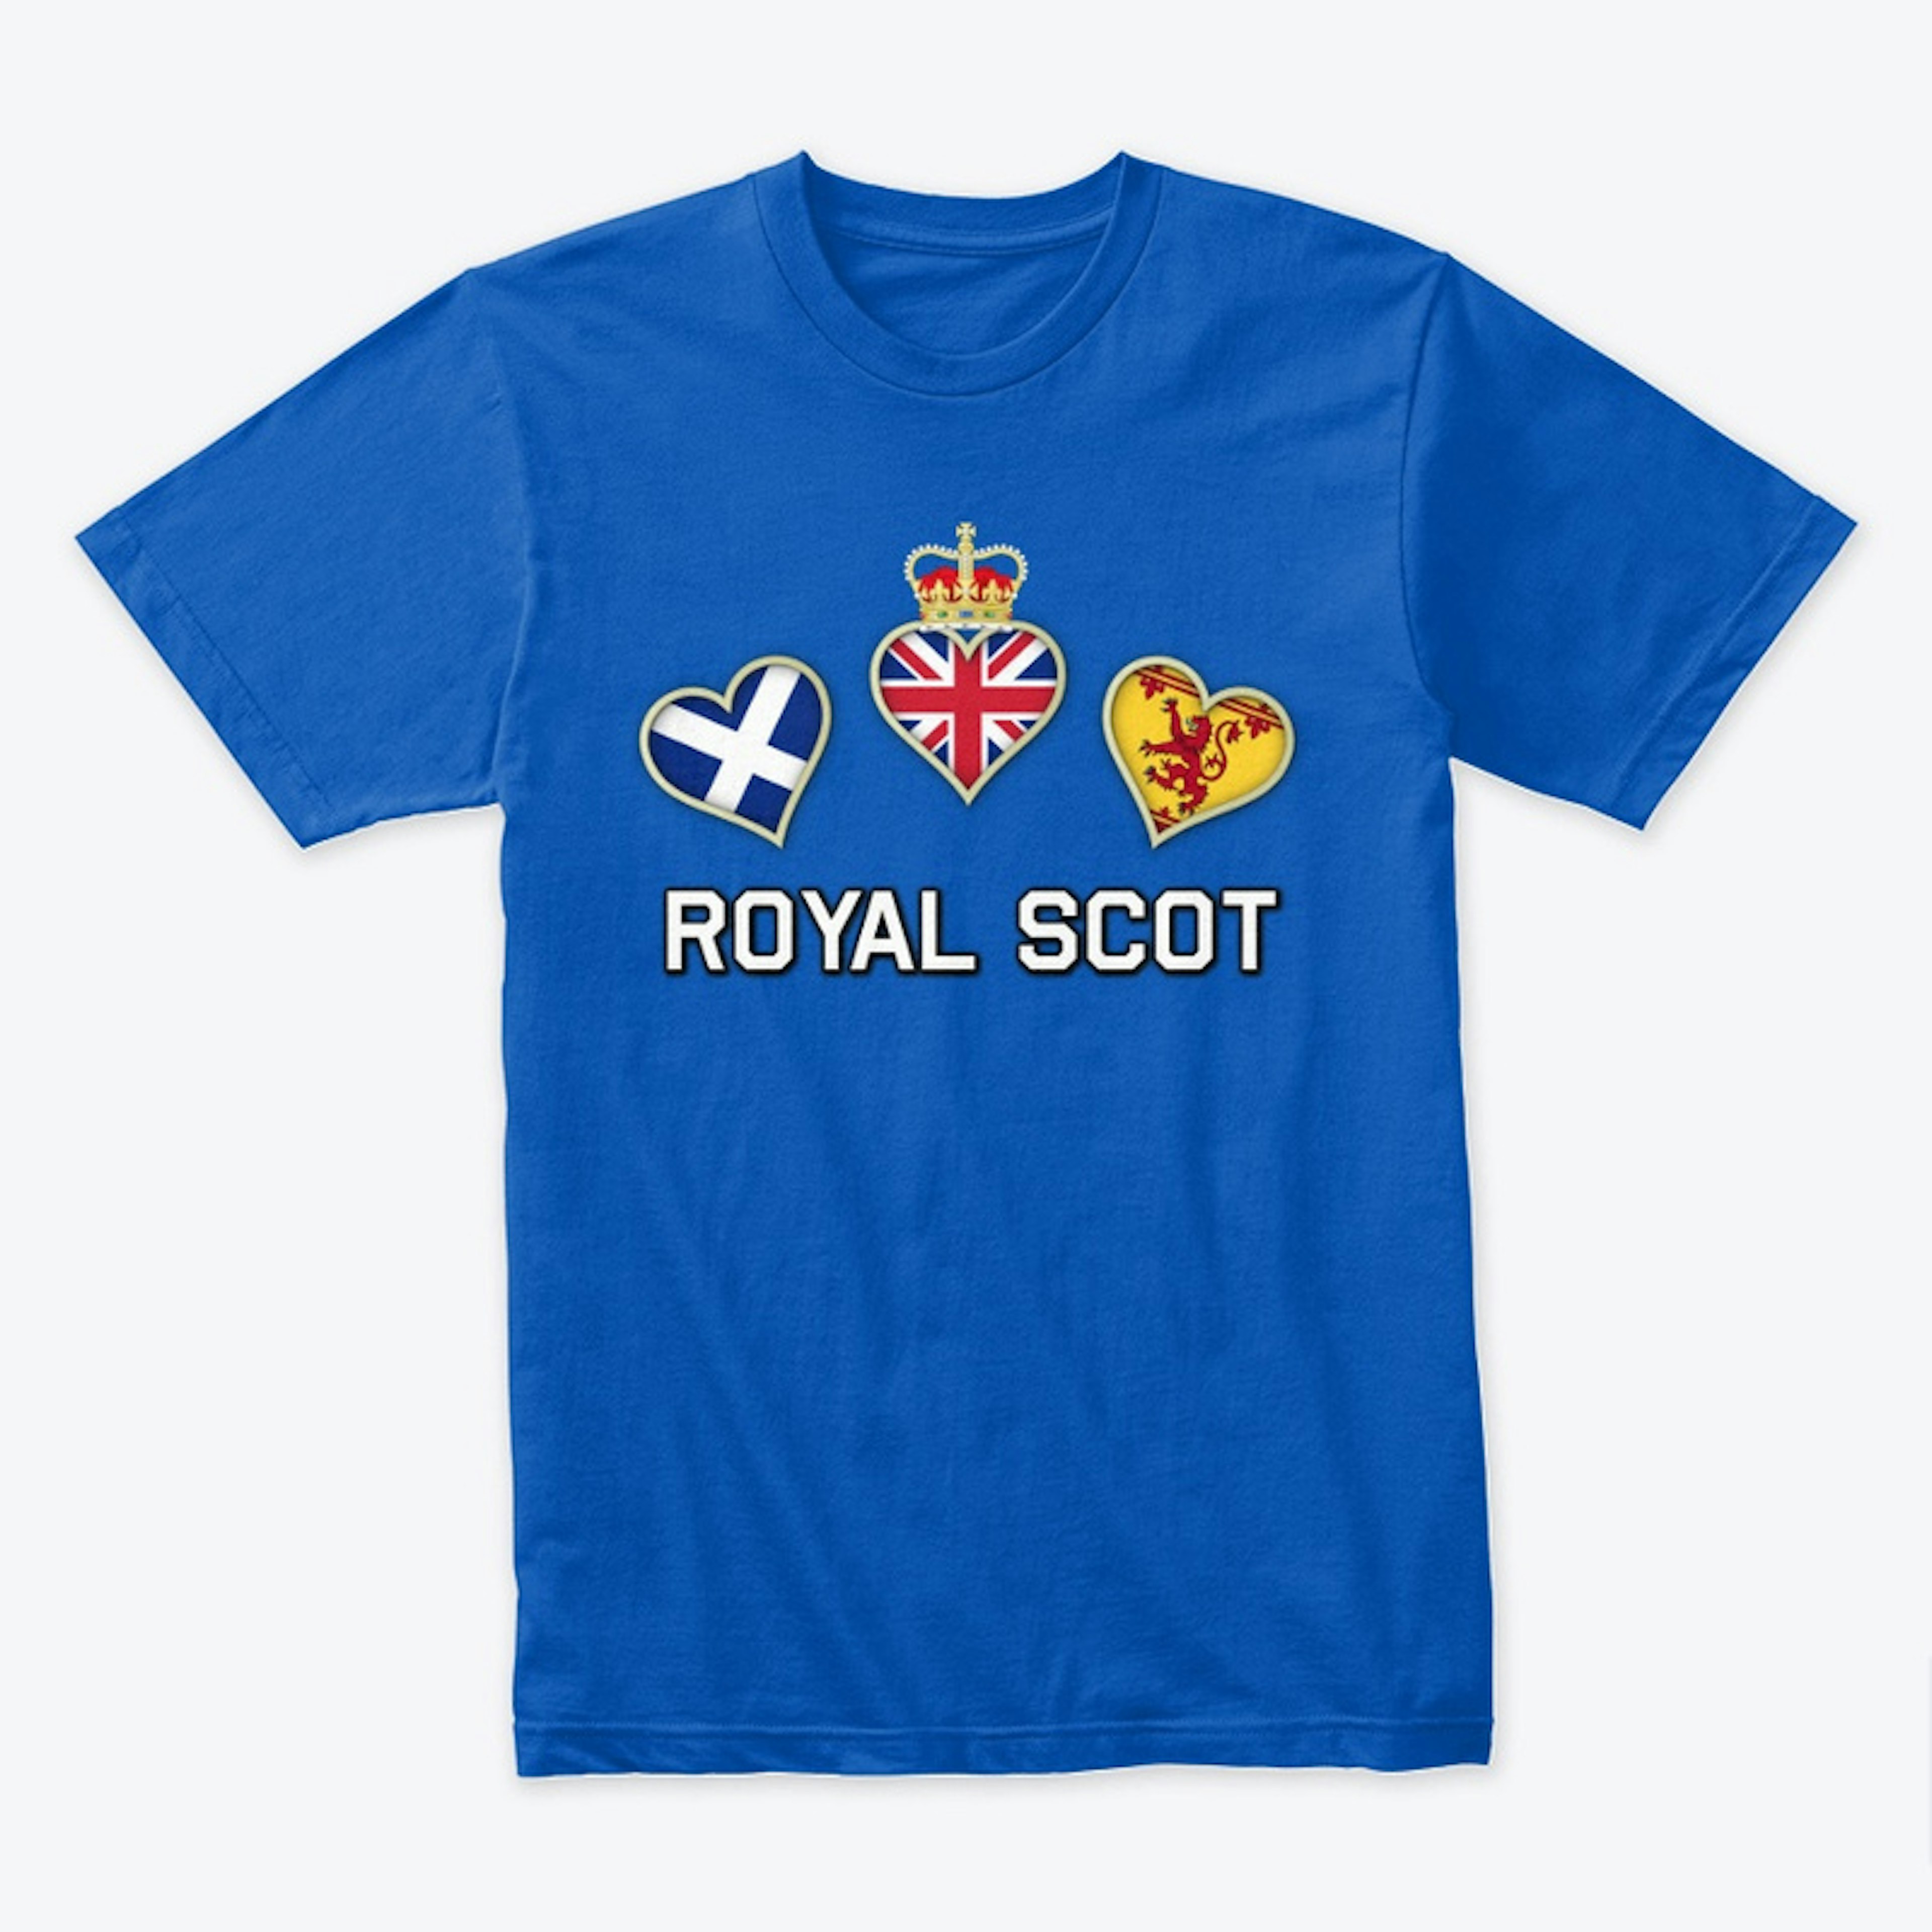 Royal Scot Merch